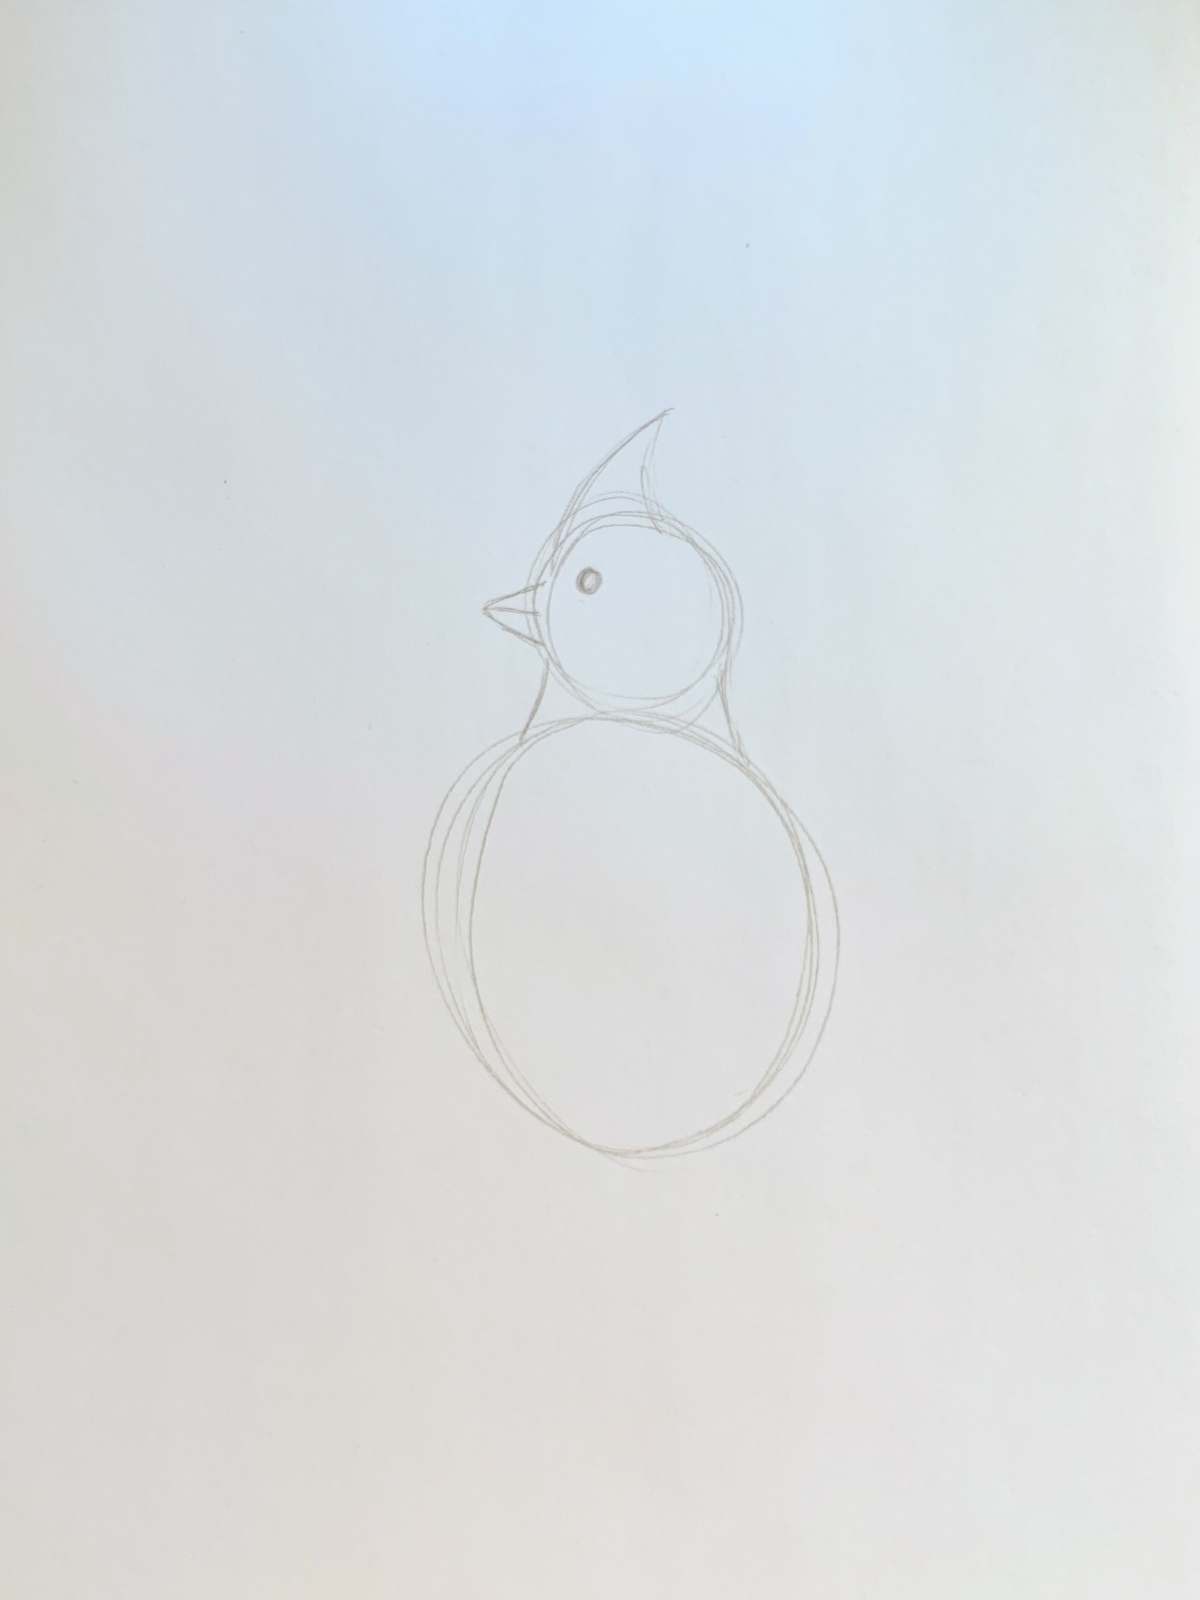 Basic bird doodle